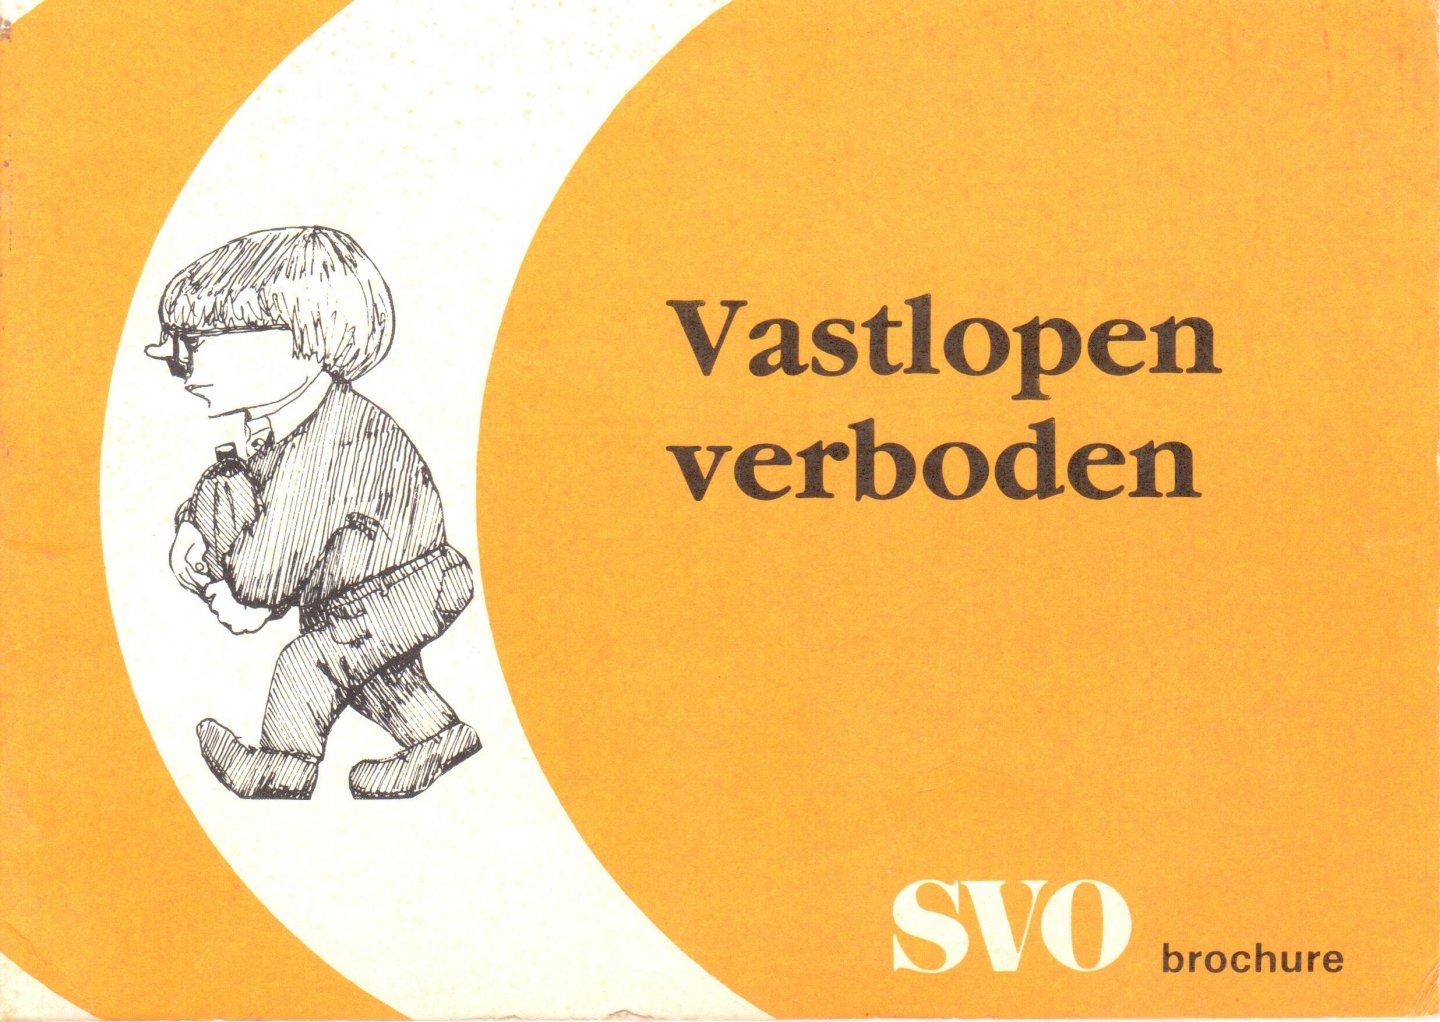 Bosch, Sije van den - Vastlopen verboden, SVO brochure